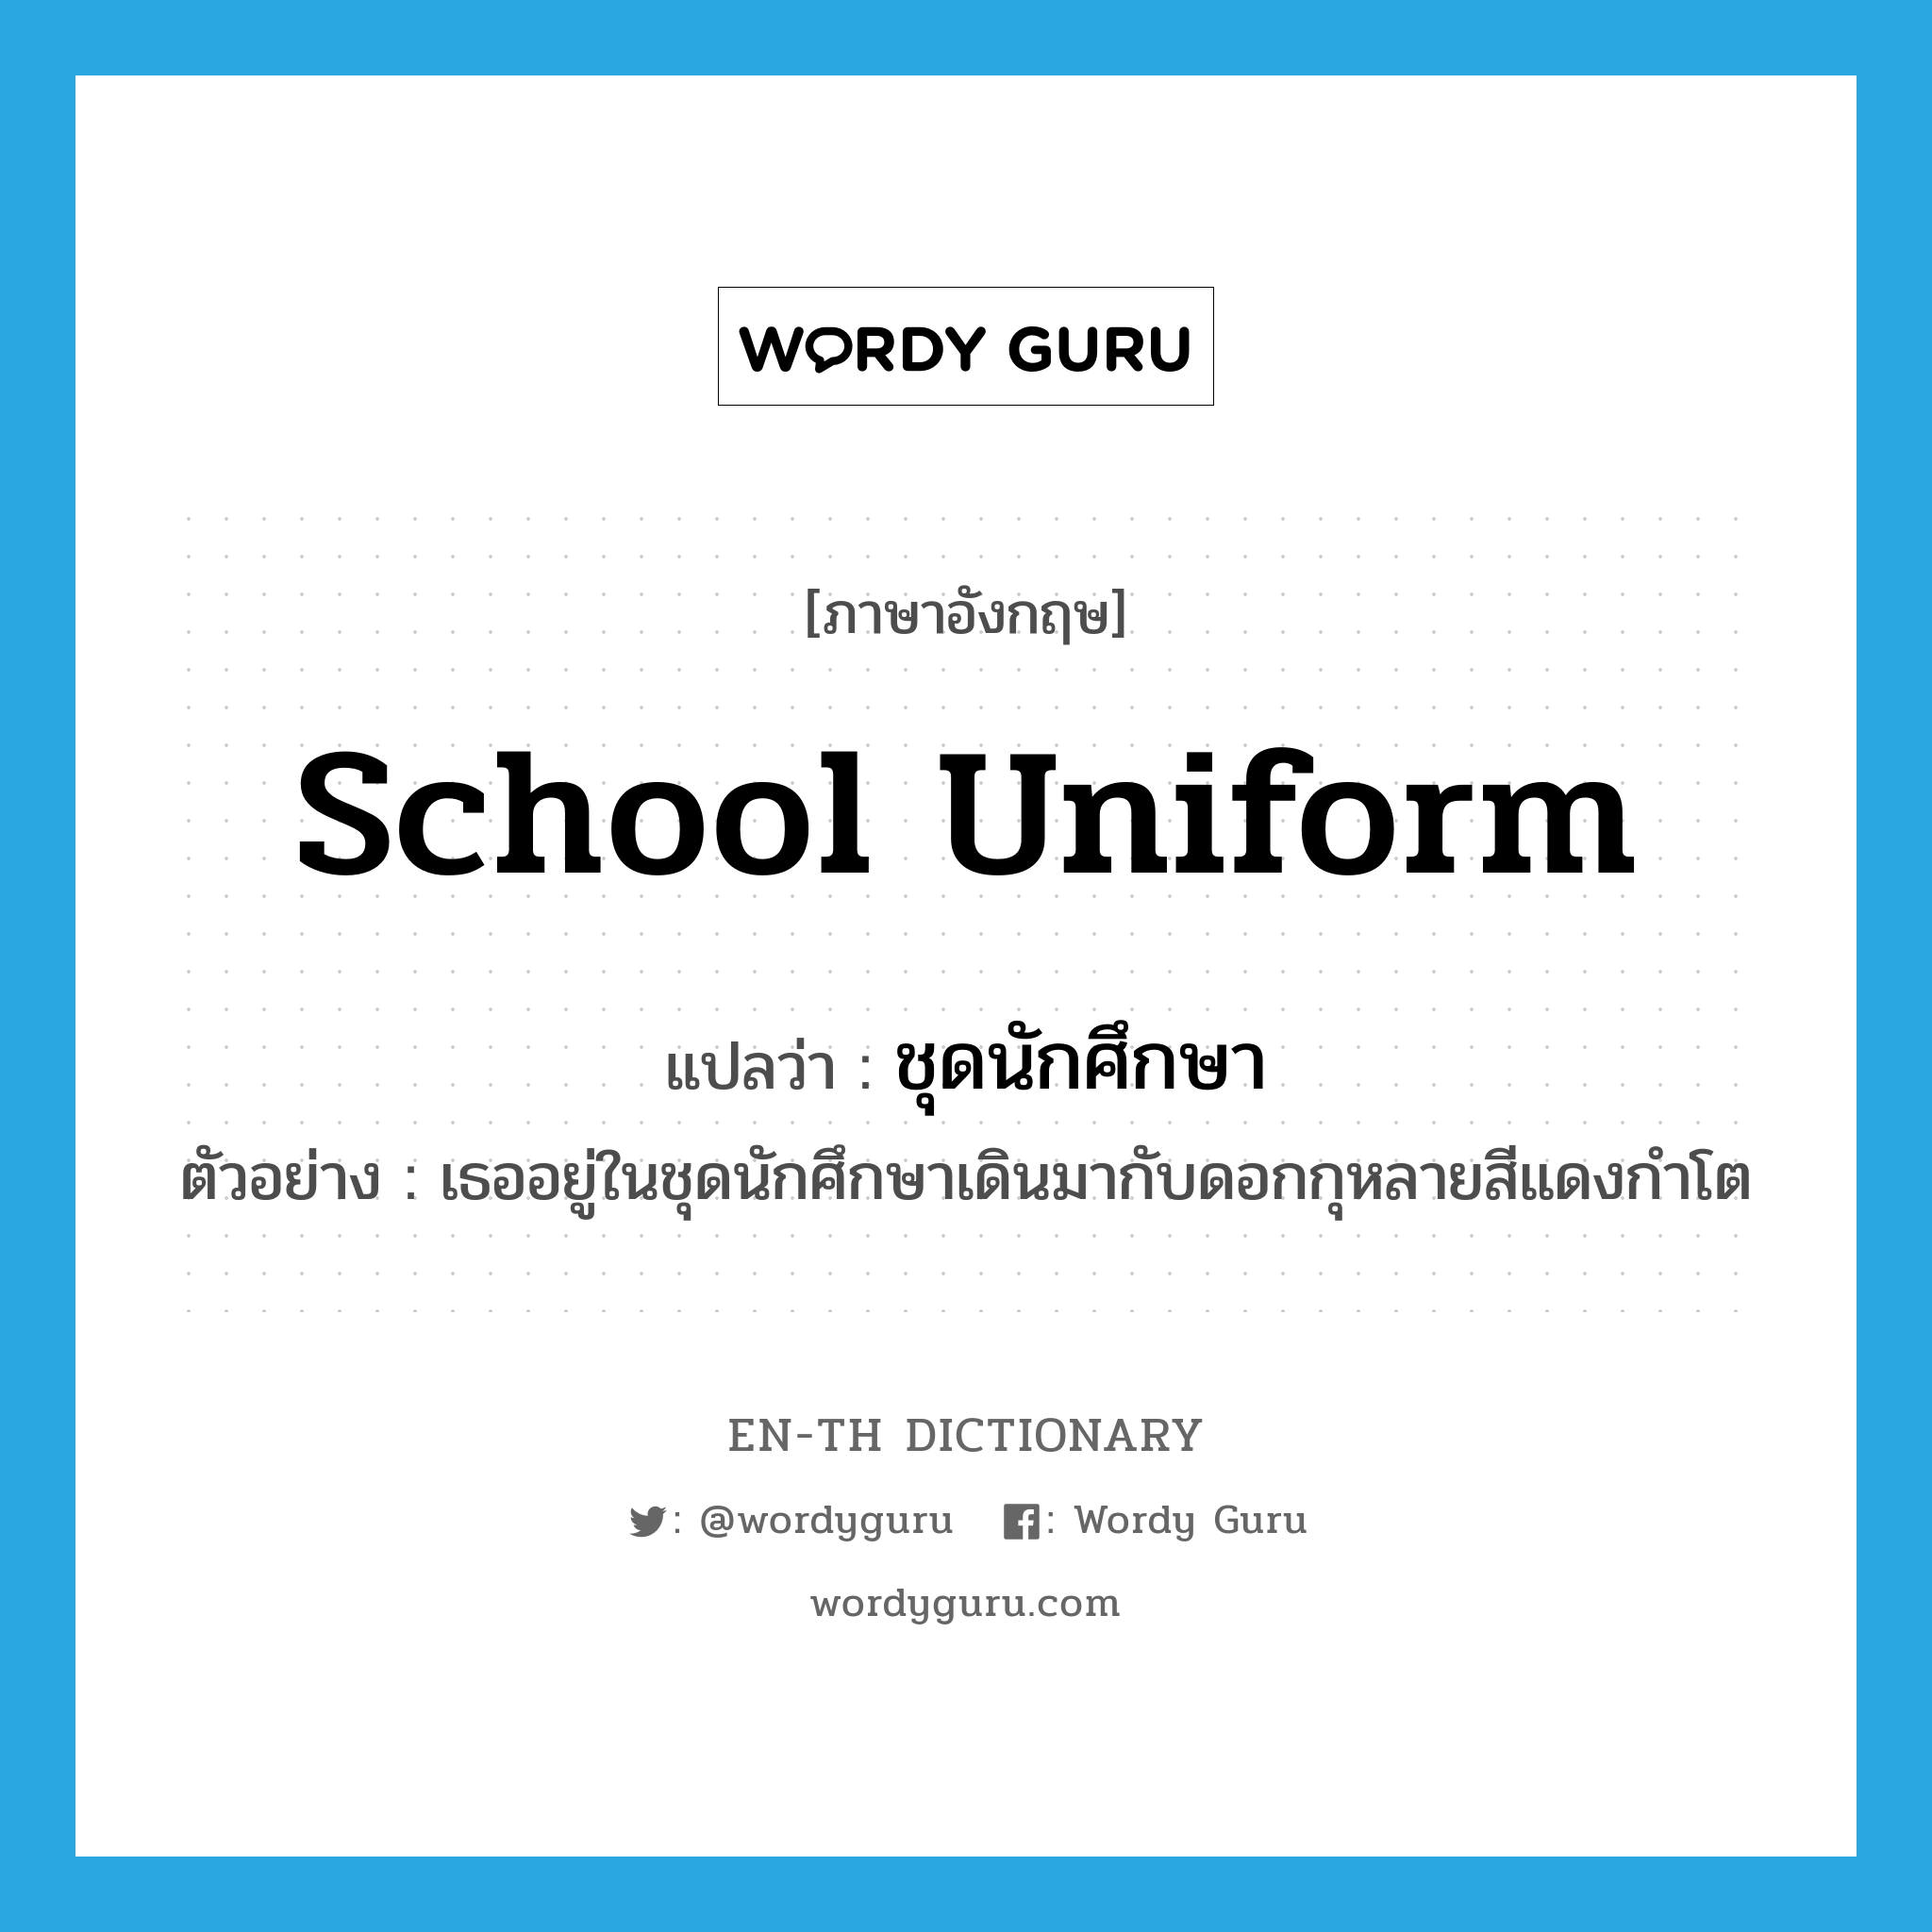 school uniform แปลว่า?, คำศัพท์ภาษาอังกฤษ school uniform แปลว่า ชุดนักศึกษา ประเภท N ตัวอย่าง เธออยู่ในชุดนักศึกษาเดินมากับดอกกุหลายสีแดงกำโต หมวด N